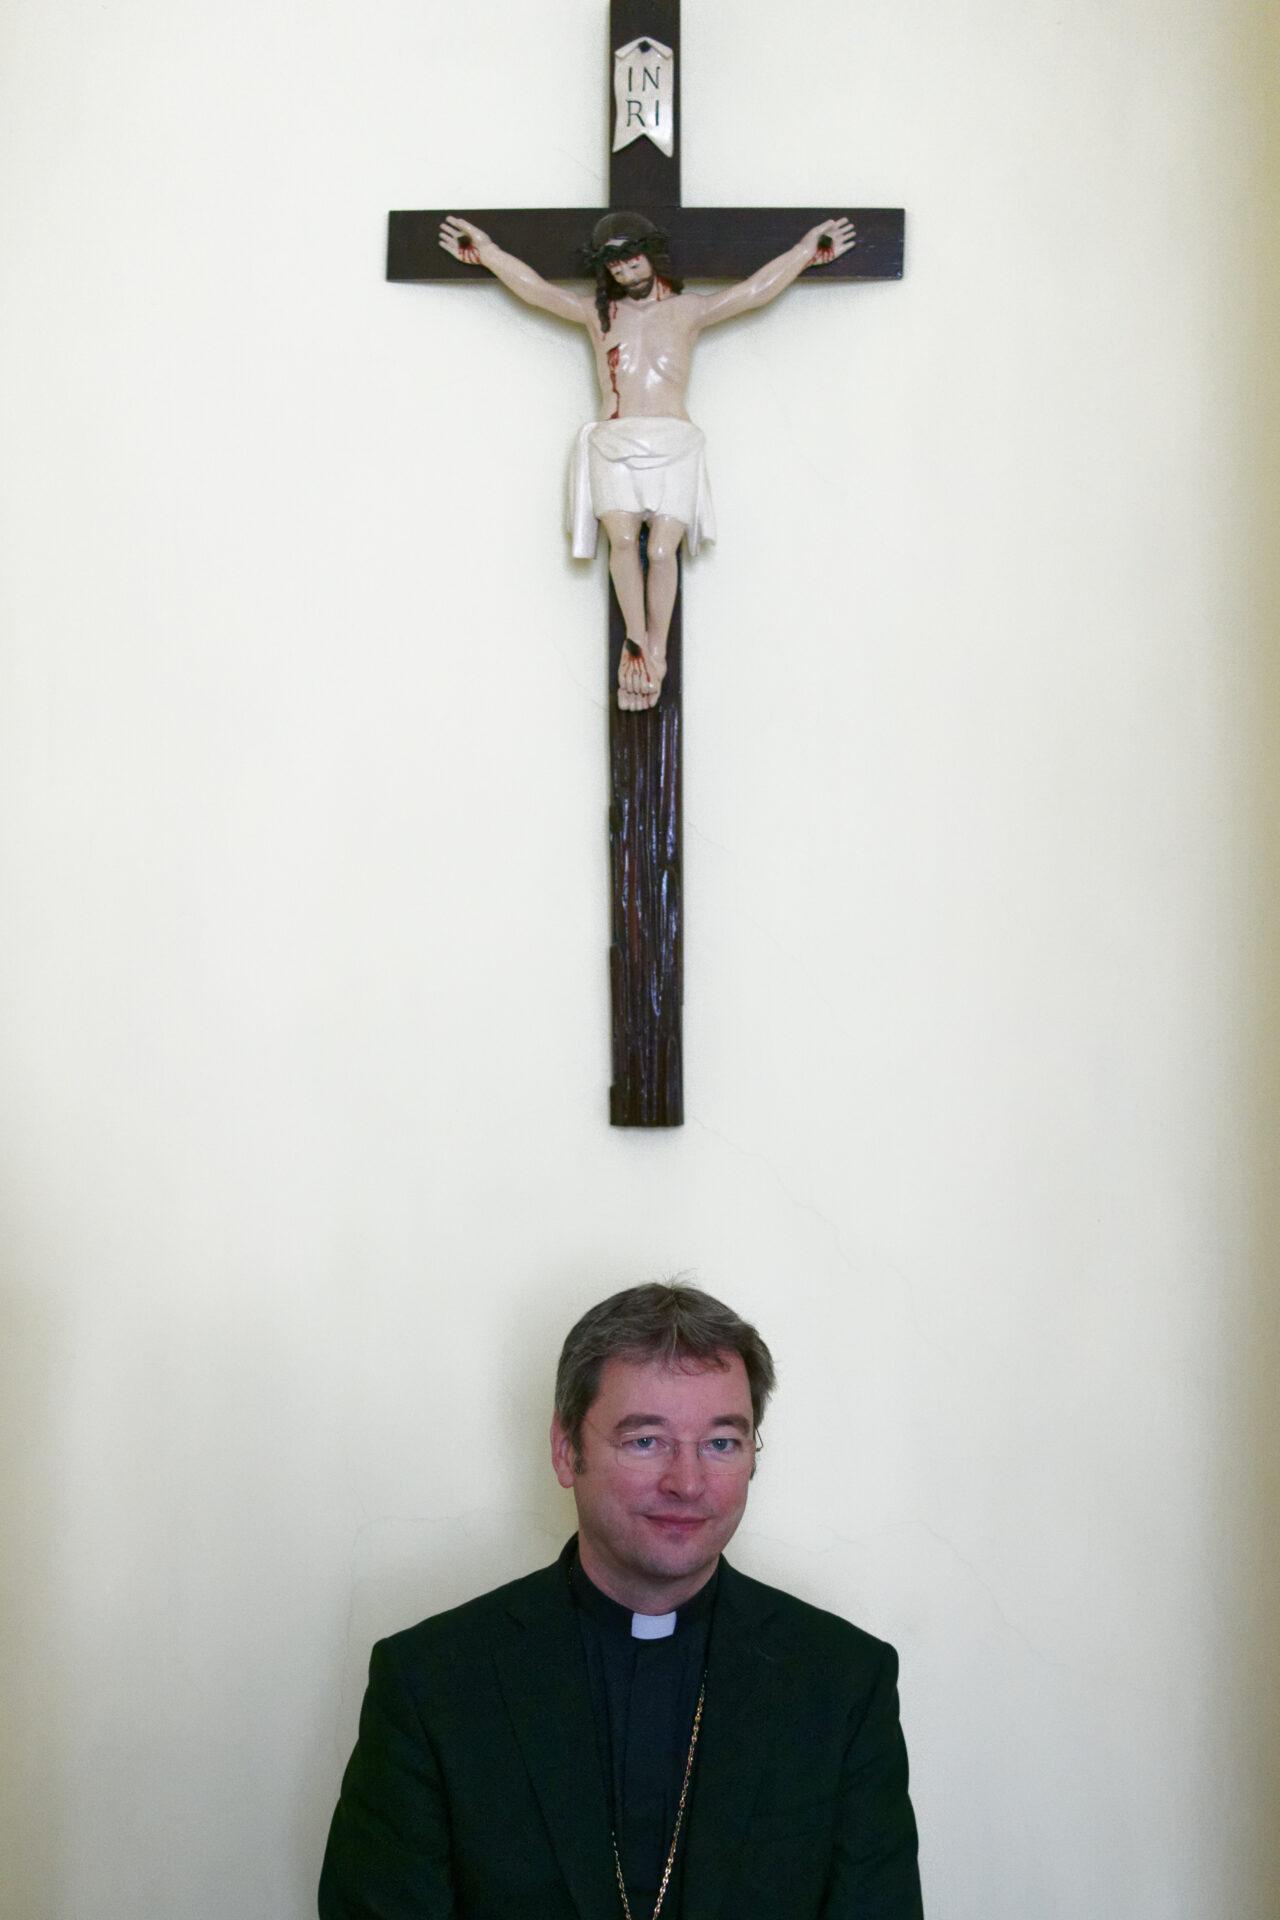 Biskup Marek Forgáč o sexuálnom zneužívaní v Cirkvi: Nemôžeme zastierať pravdu. Musíme sa jej pozrieť do očí